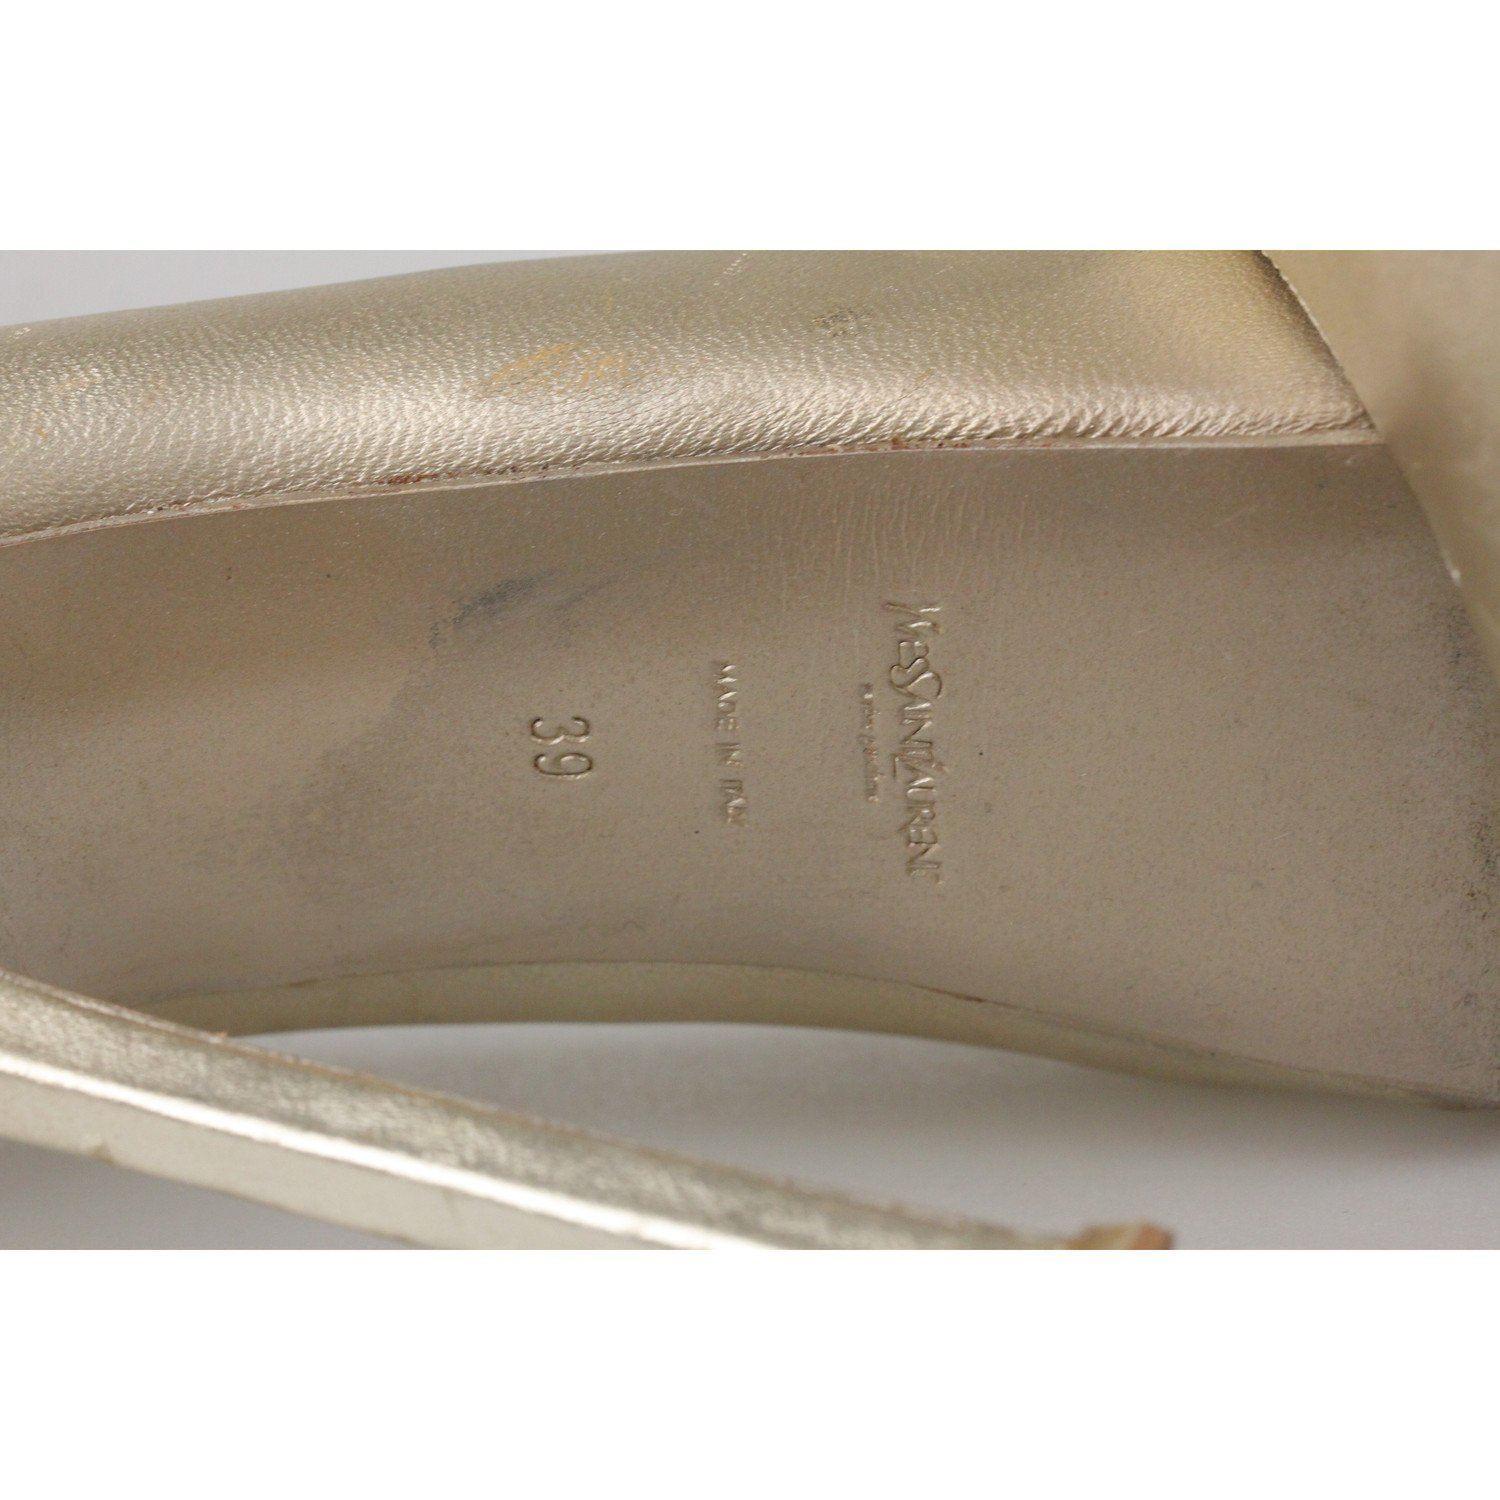 YVES SAINT LAURENT Gold Metal Leather Platform Pumps Heels Shoes Size 39 4